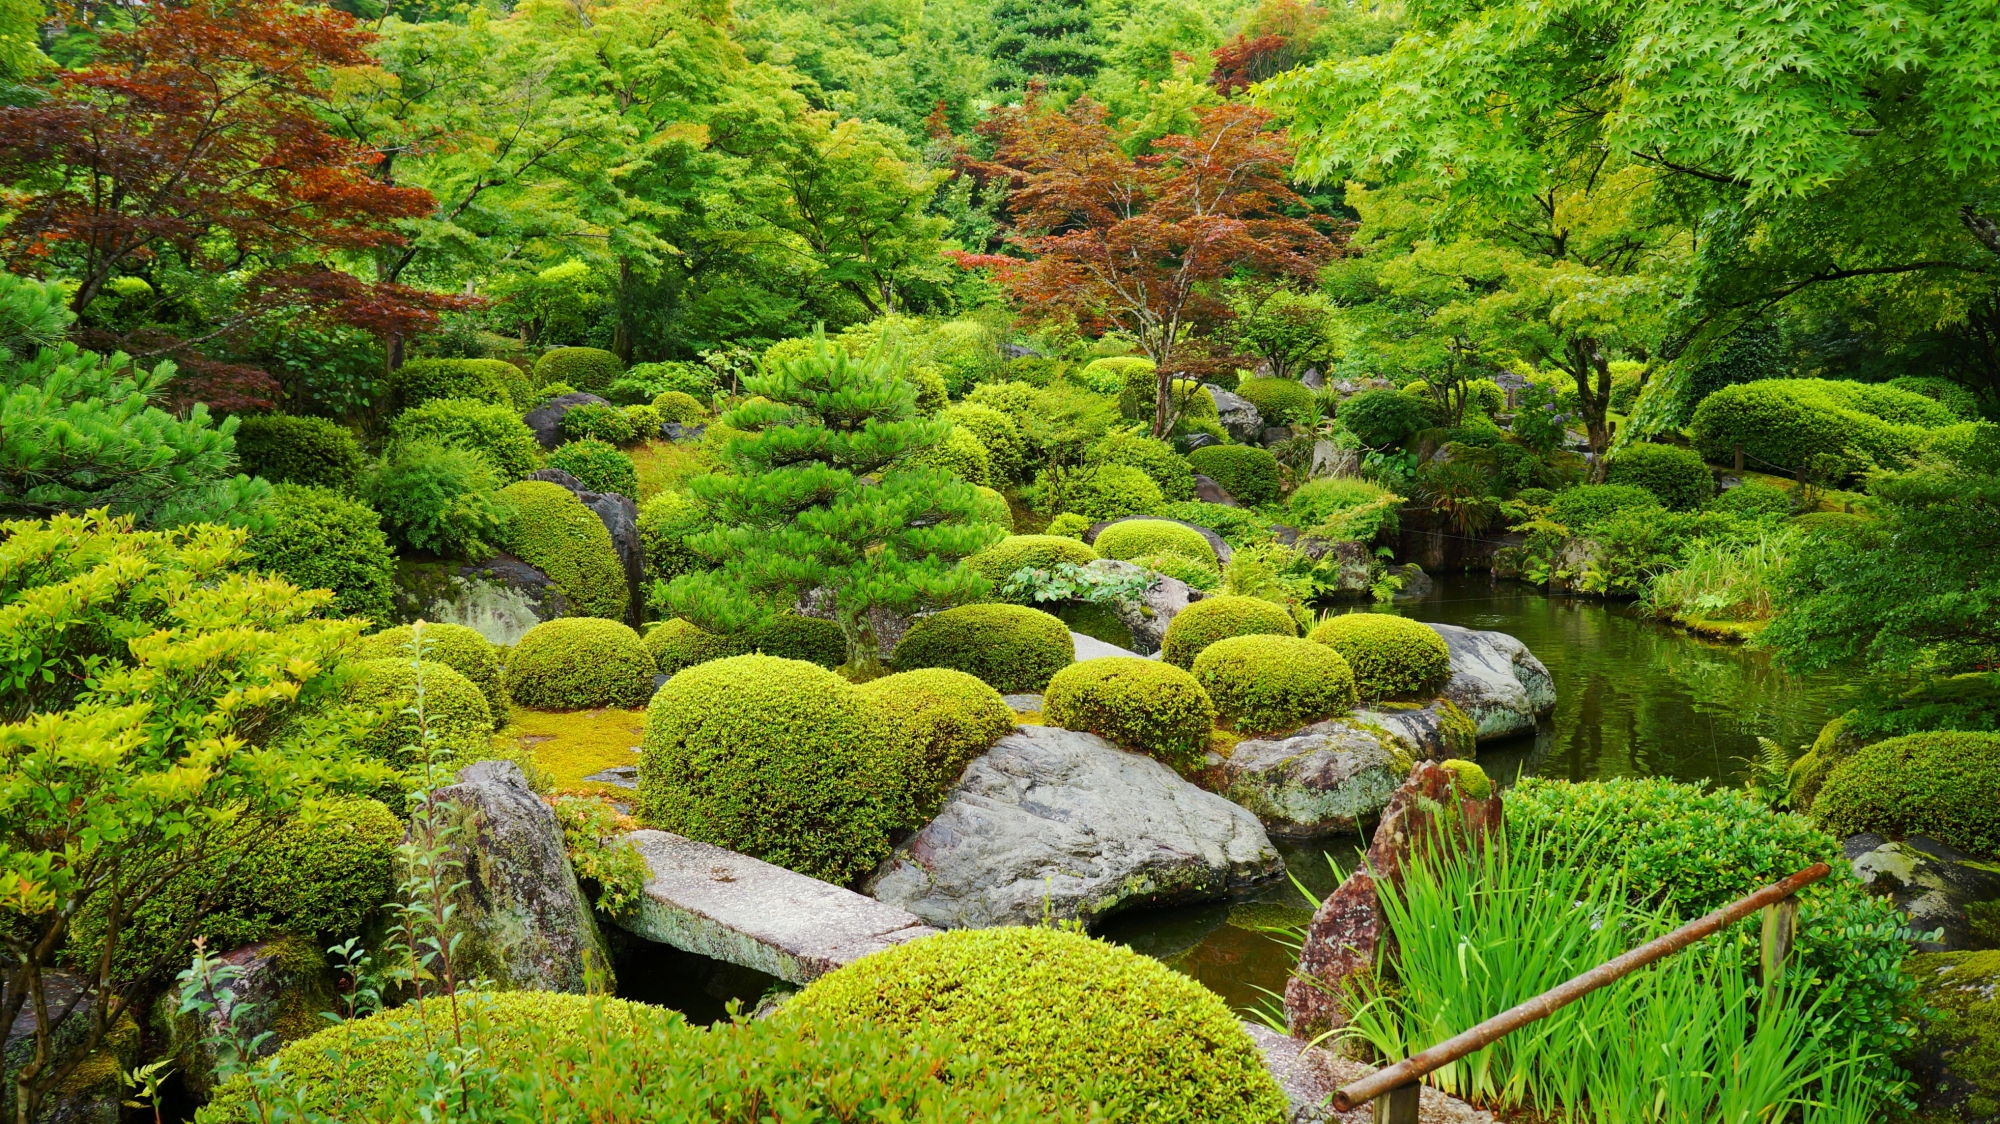 多種多様な植物や木々が植えられている三室戸寺の池泉回遊式庭園